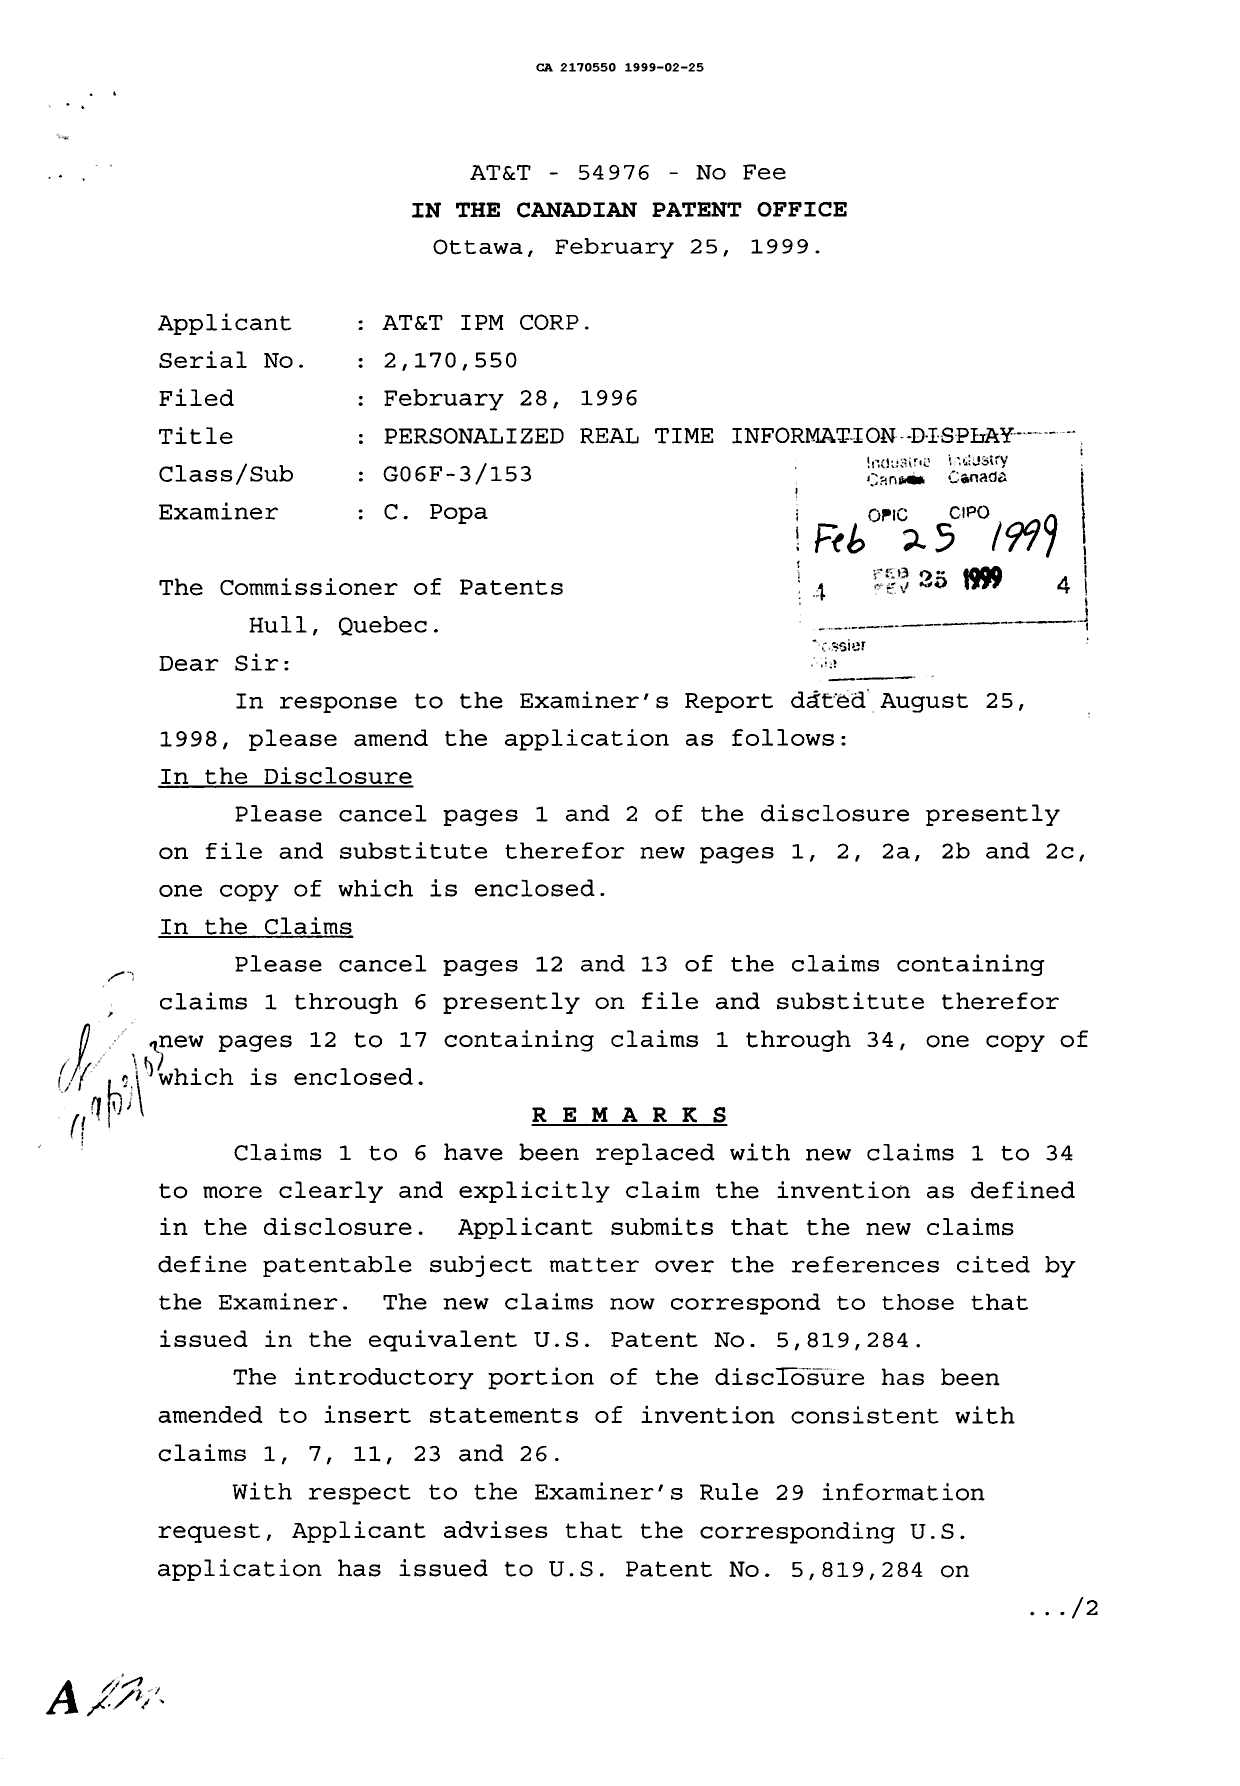 Document de brevet canadien 2170550. Correspondance de la poursuite 19990225. Image 1 de 2